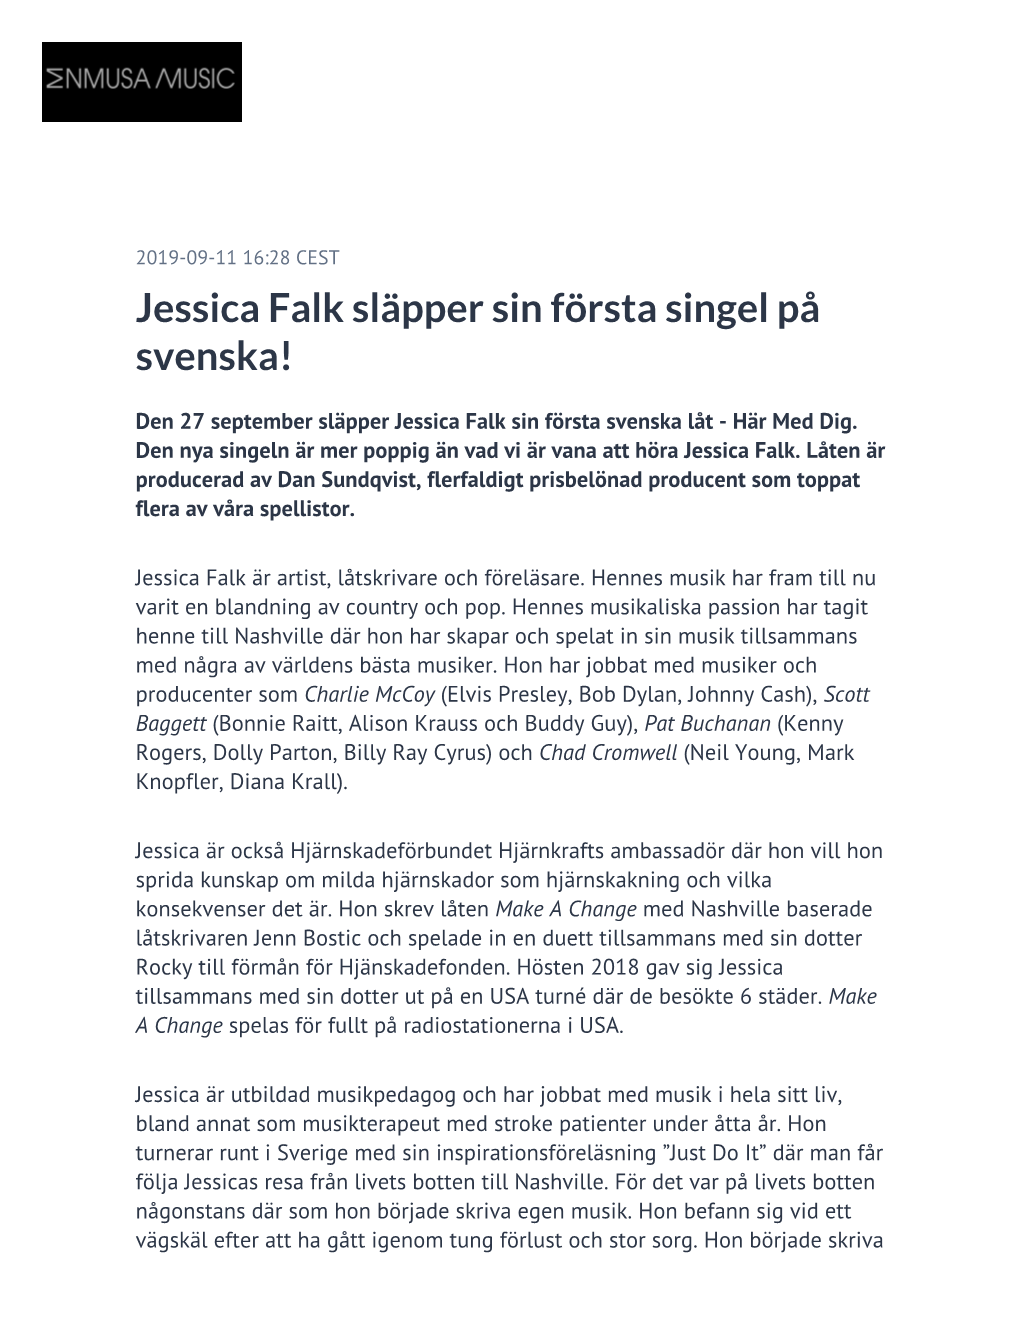 Jessica Falk Släpper Sin Första Singel På Svenska!